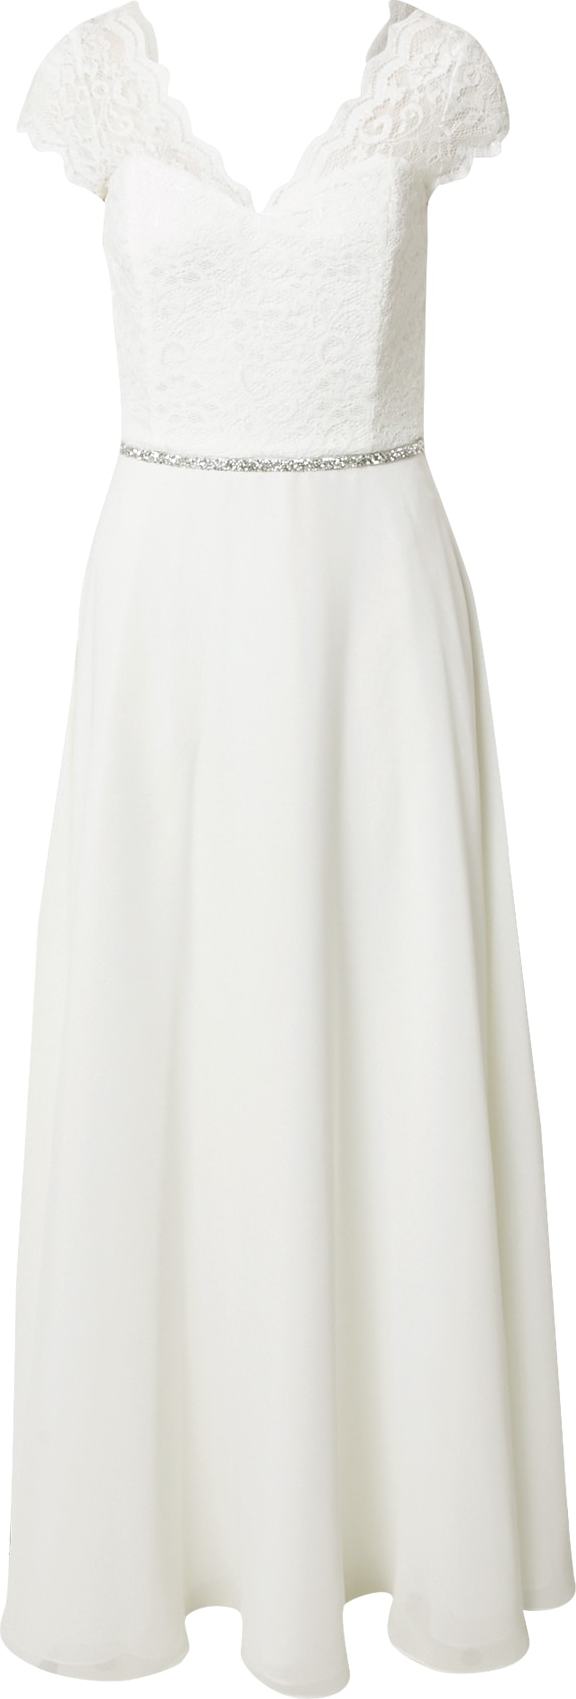 SWING Společenské šaty bílá